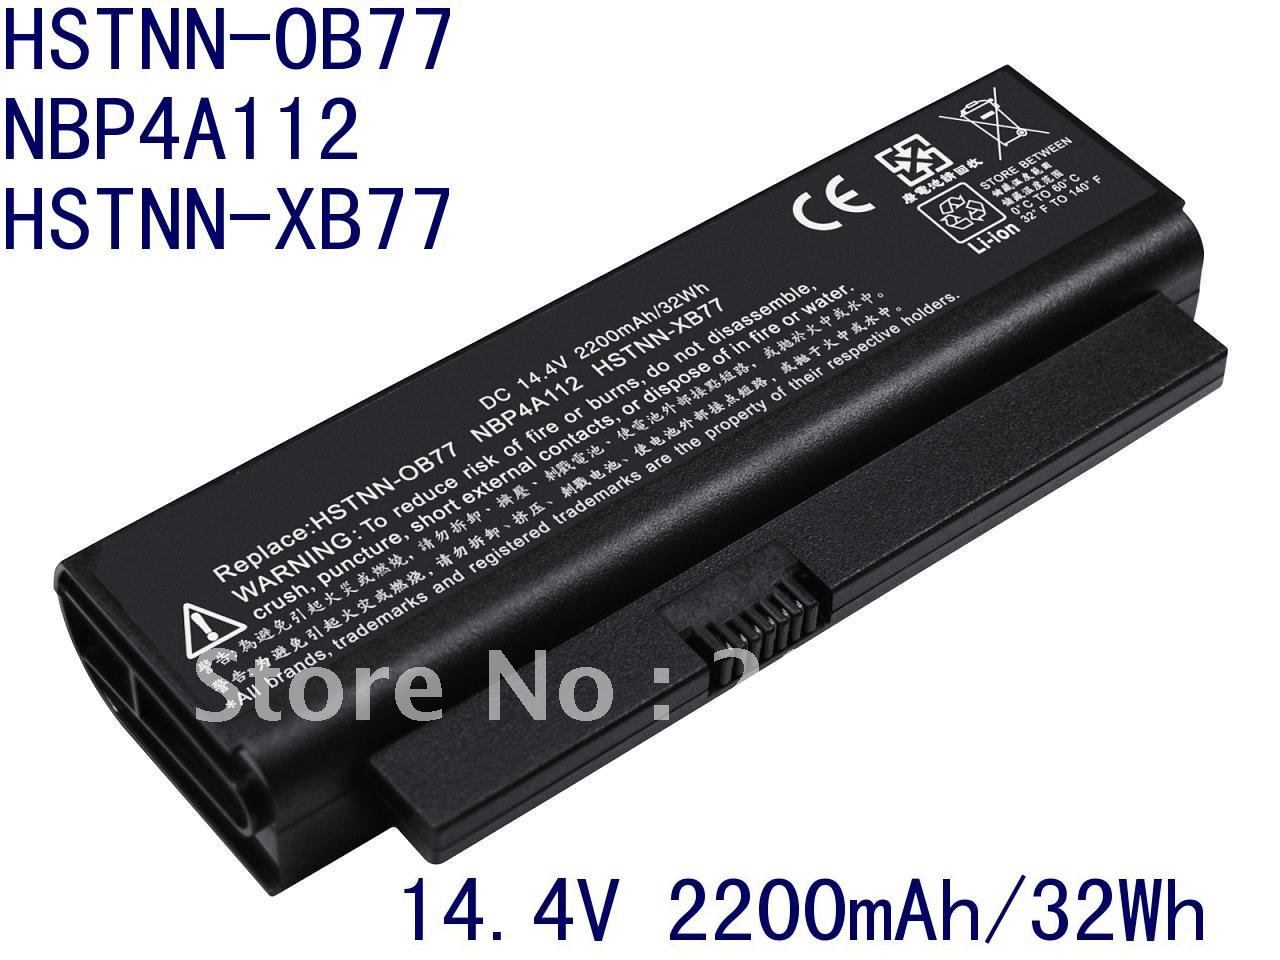 compaq presario c700 battery. Compatible Compaq HP 2230s